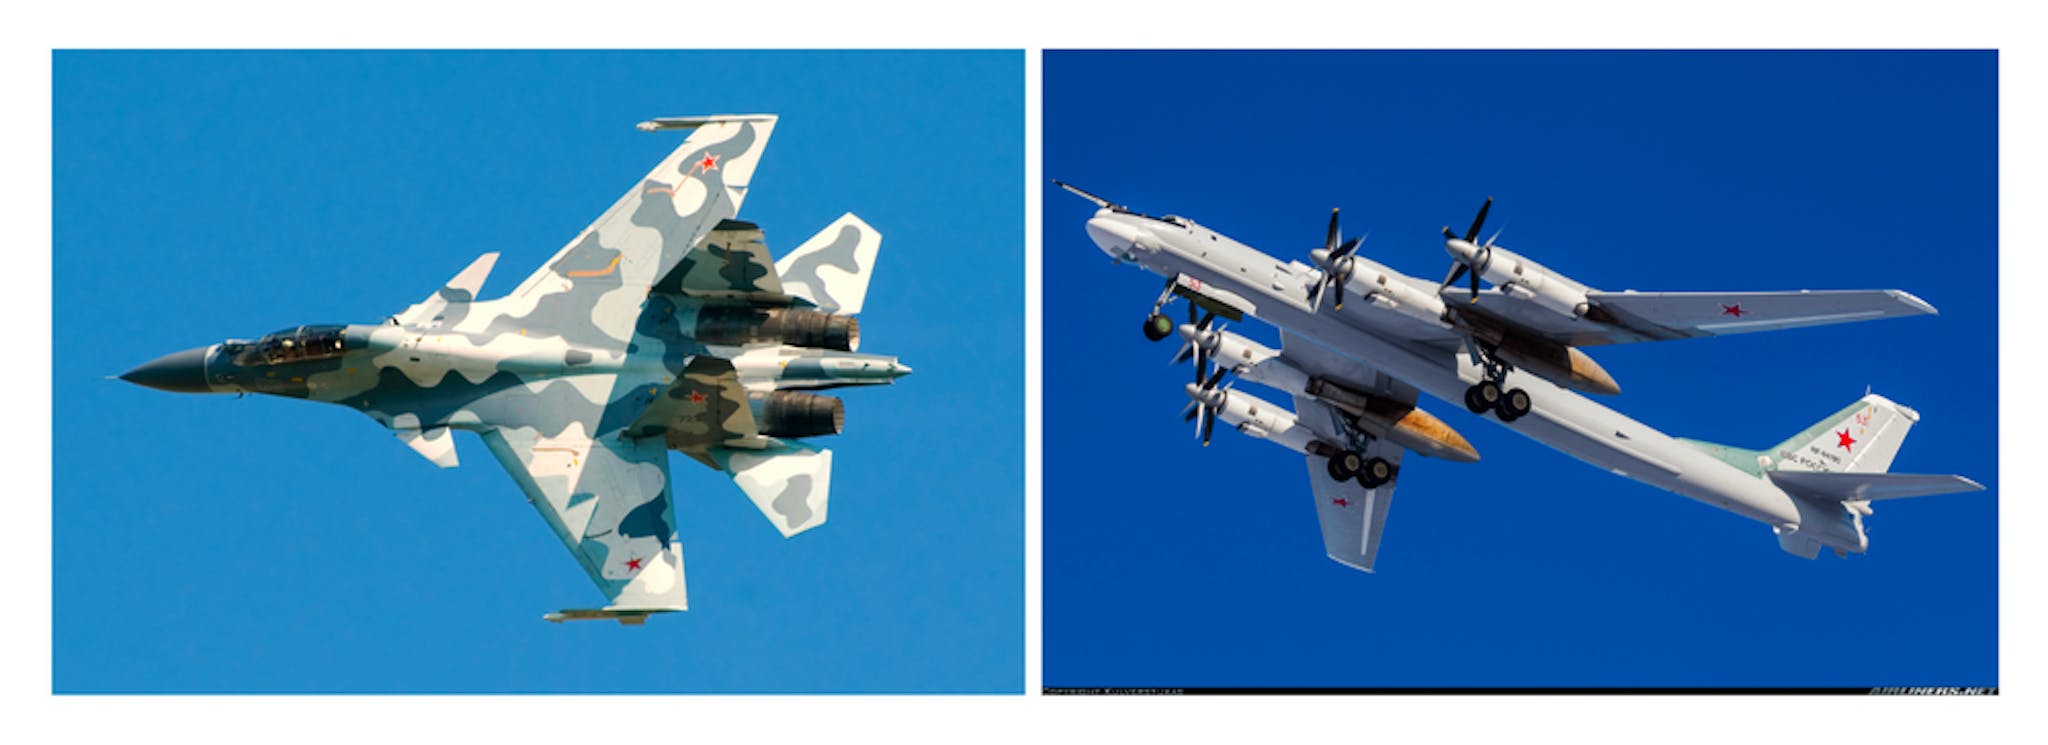 Von links nach rechts: (1) Su-30, (2) Tu-95